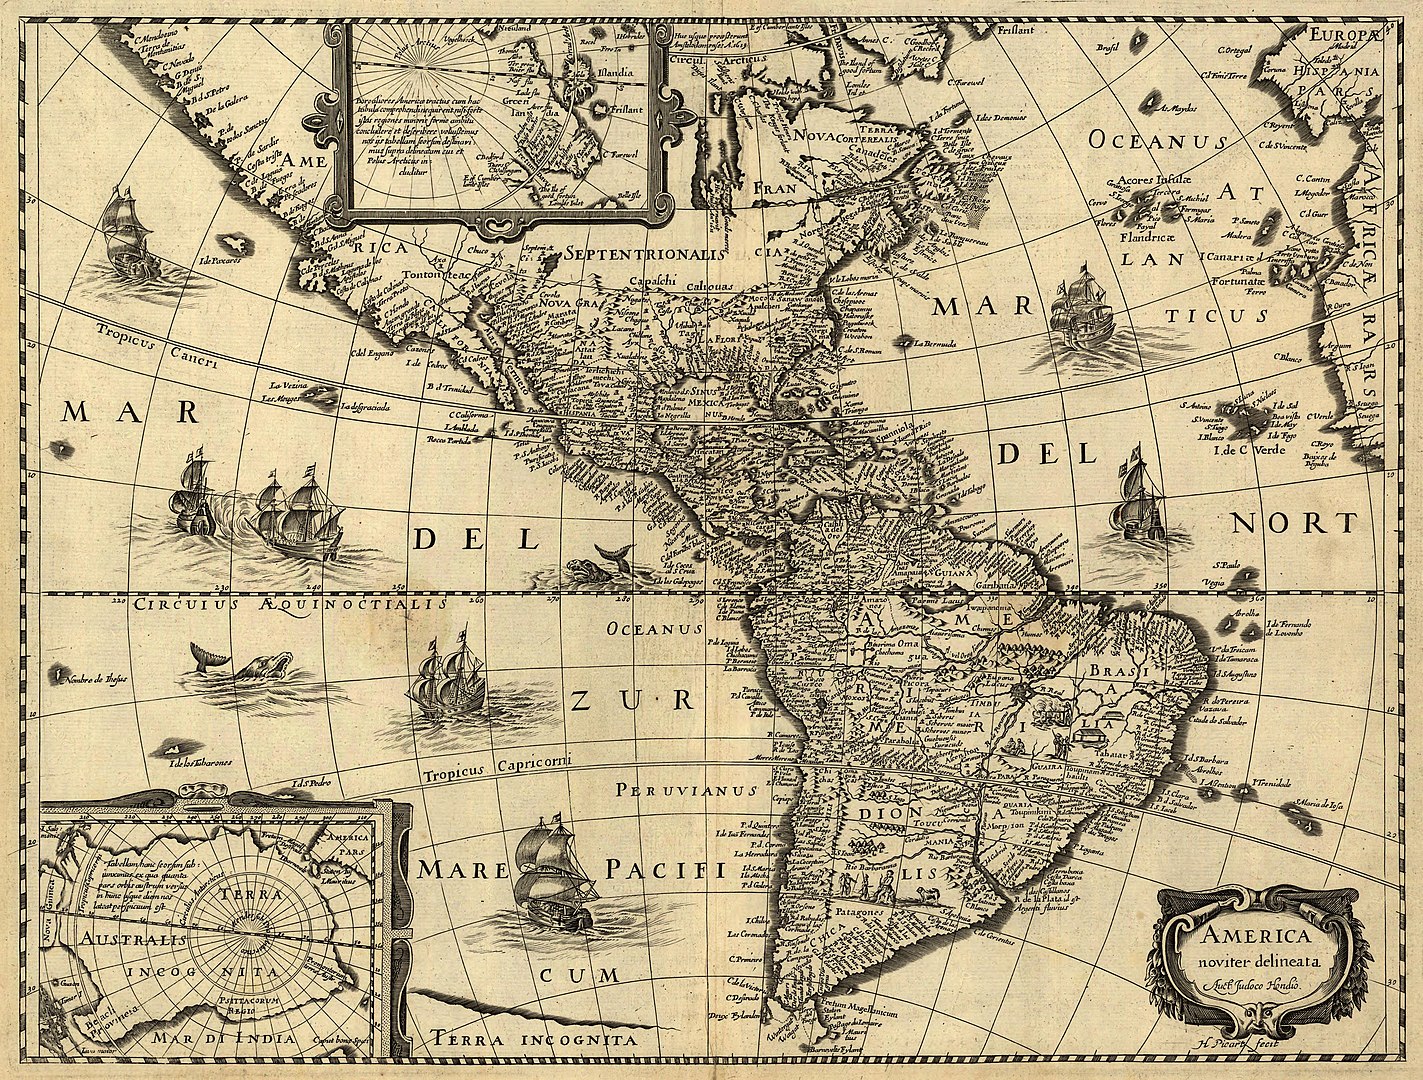 27 de mayo de 1517 Frailes dominicos y franciscanos hacían una carta a la monarquía hispánica denunciando los abusos hacia los indígenas